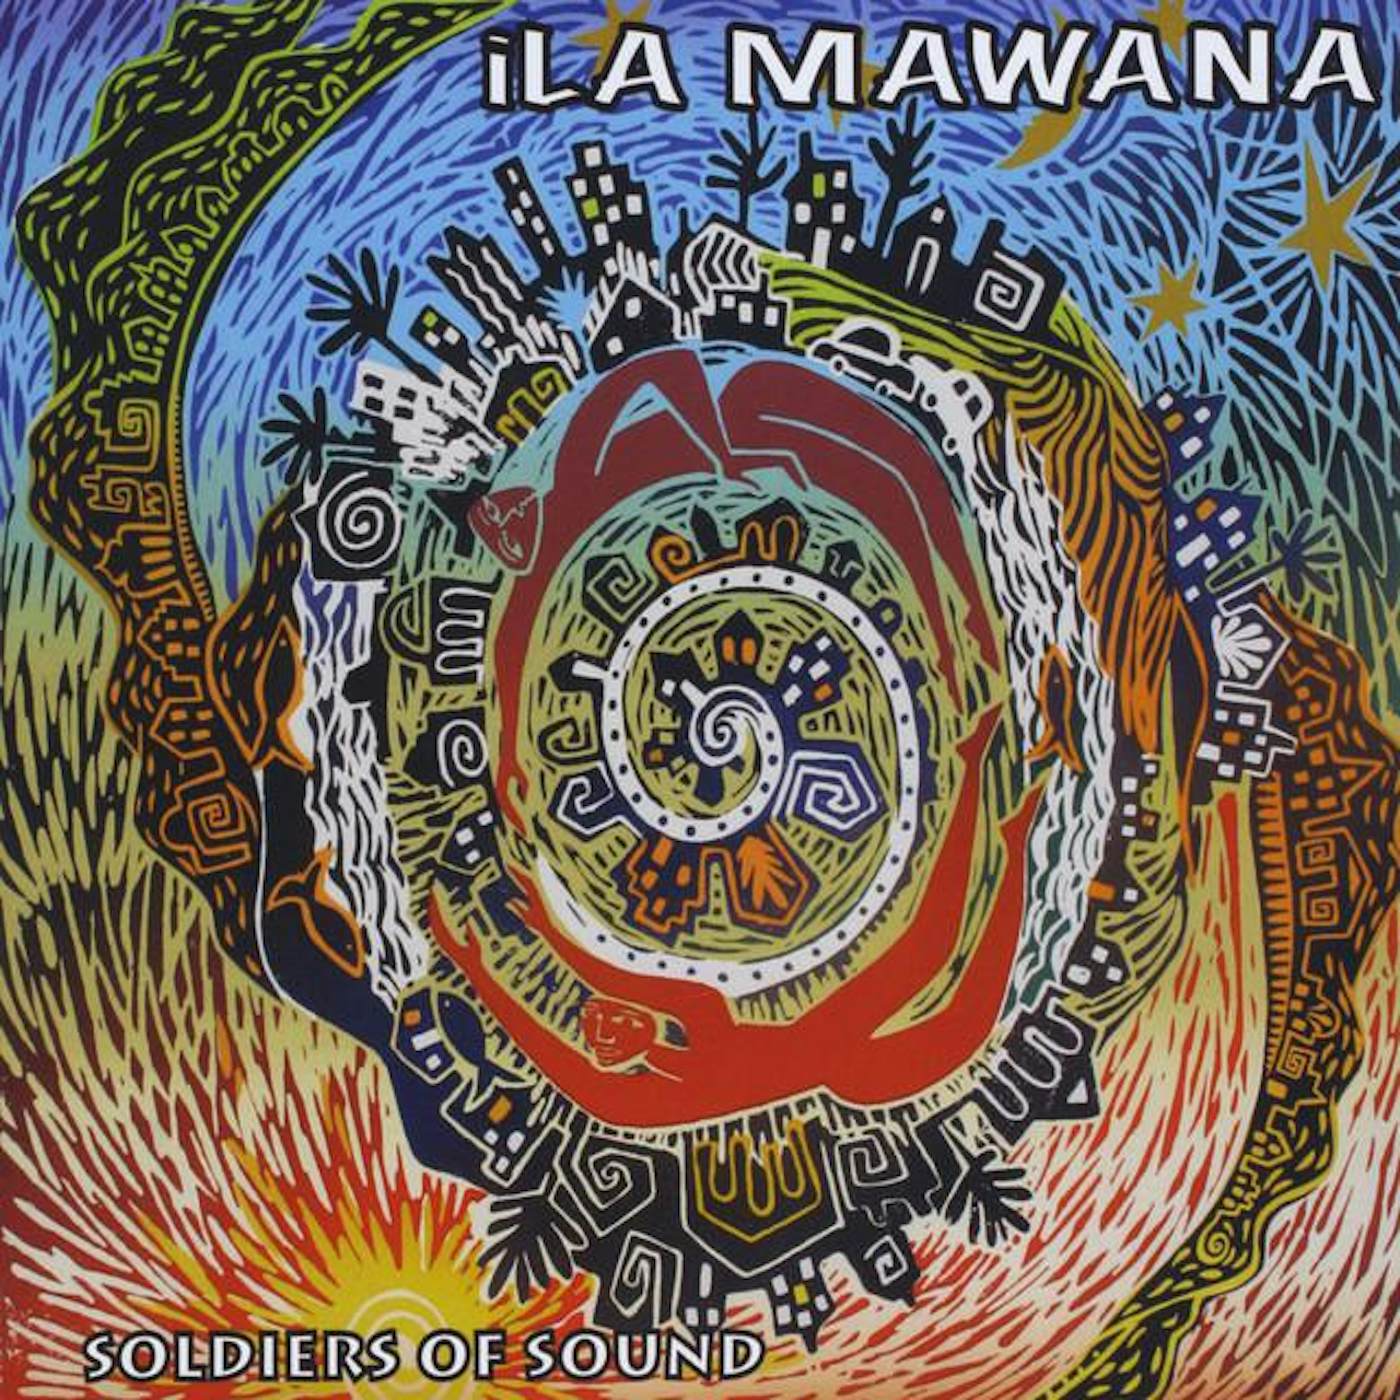 iLa Mawana